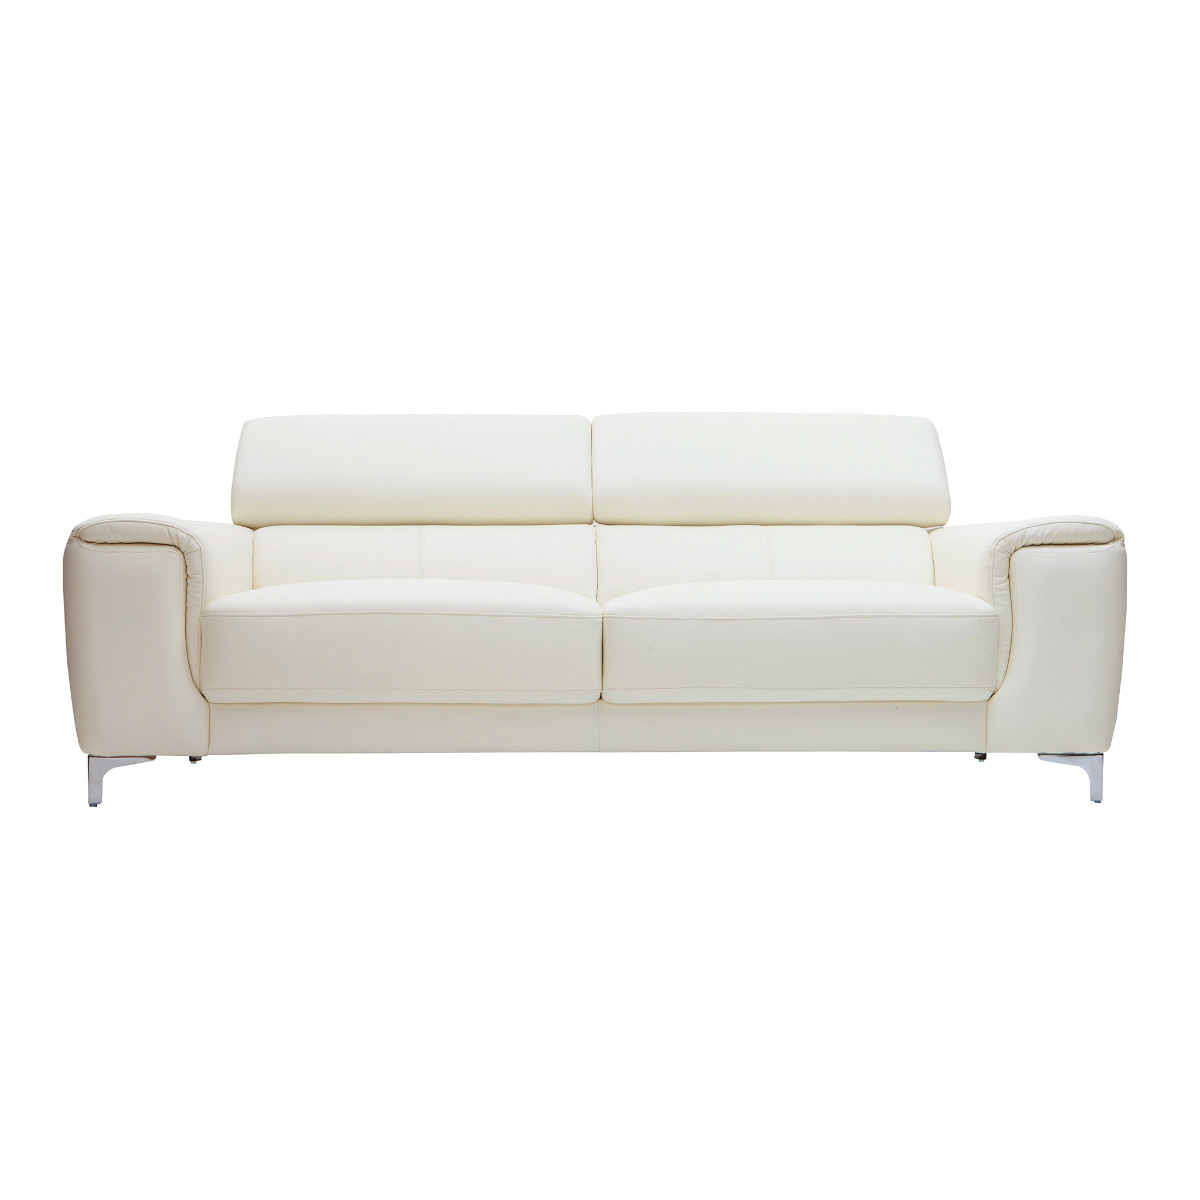 Canapé design avec têtières ajustables 3 places cuir blanc et acier chromé NEVADA vue1